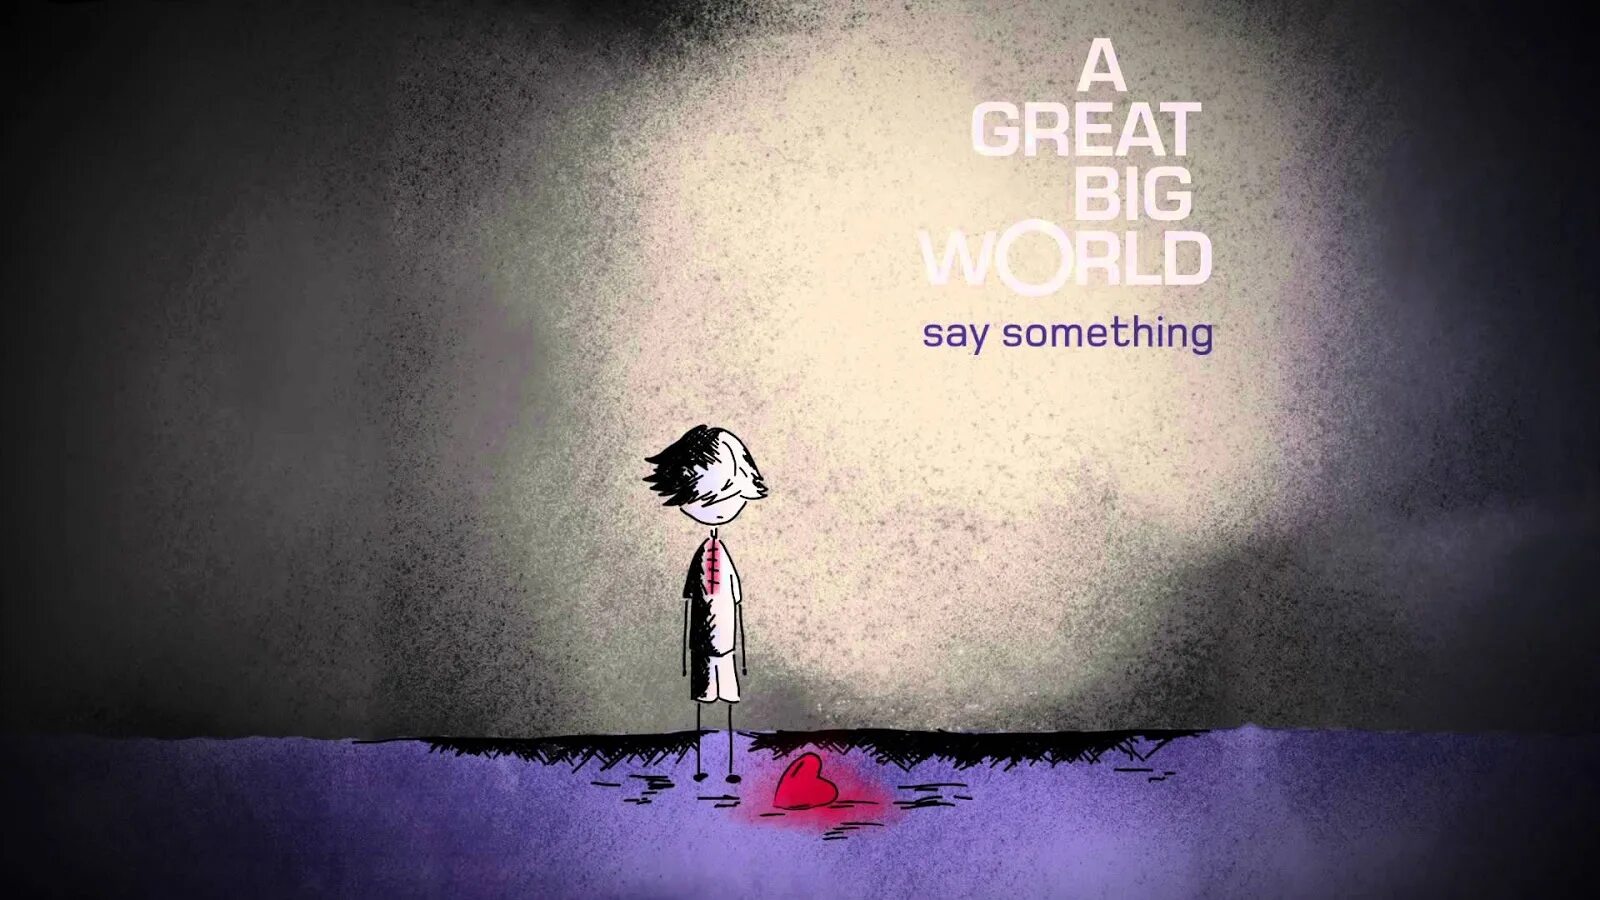 Was it something i said. Say something!. Big World. Say something a great big World текст. A great big World.